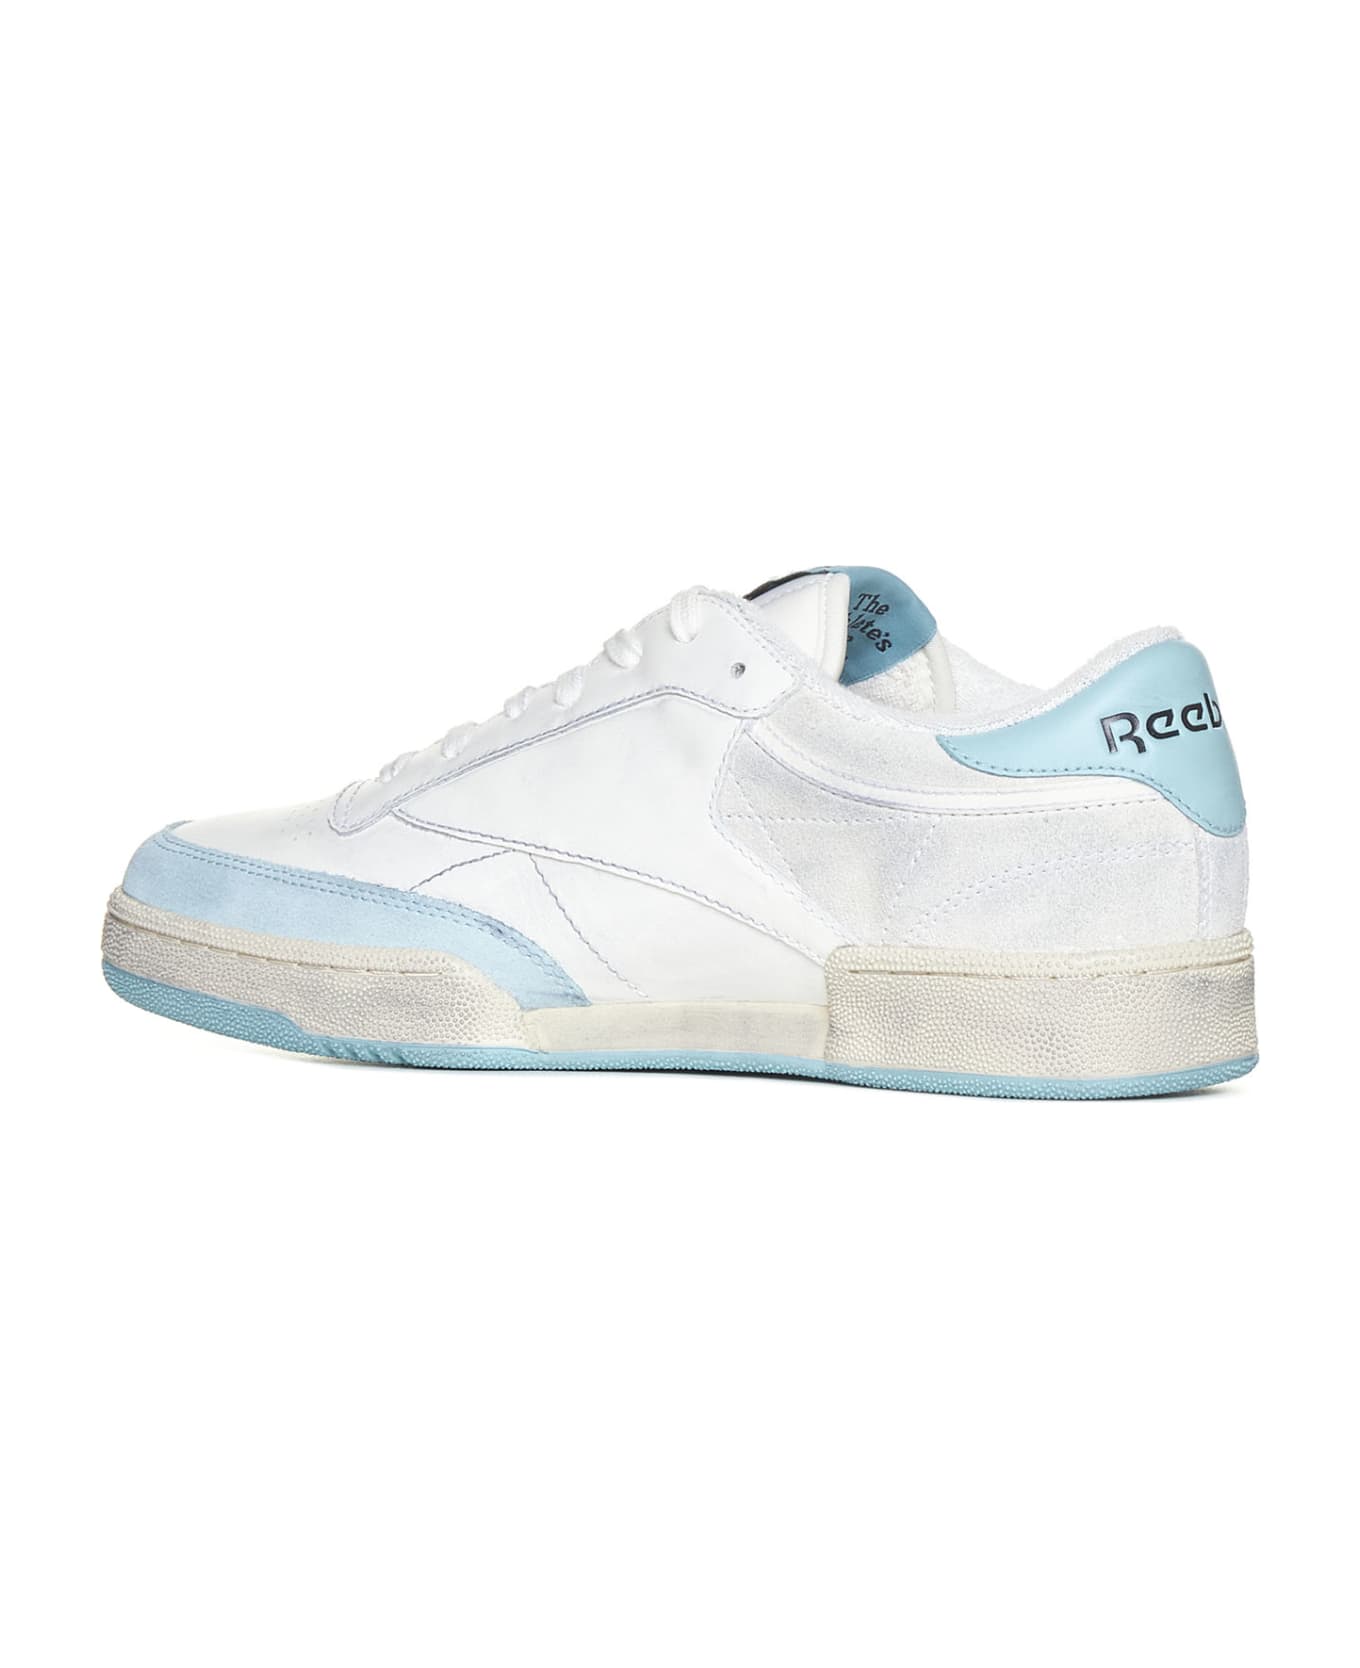 Reebok Sneakers - White light blue スニーカー